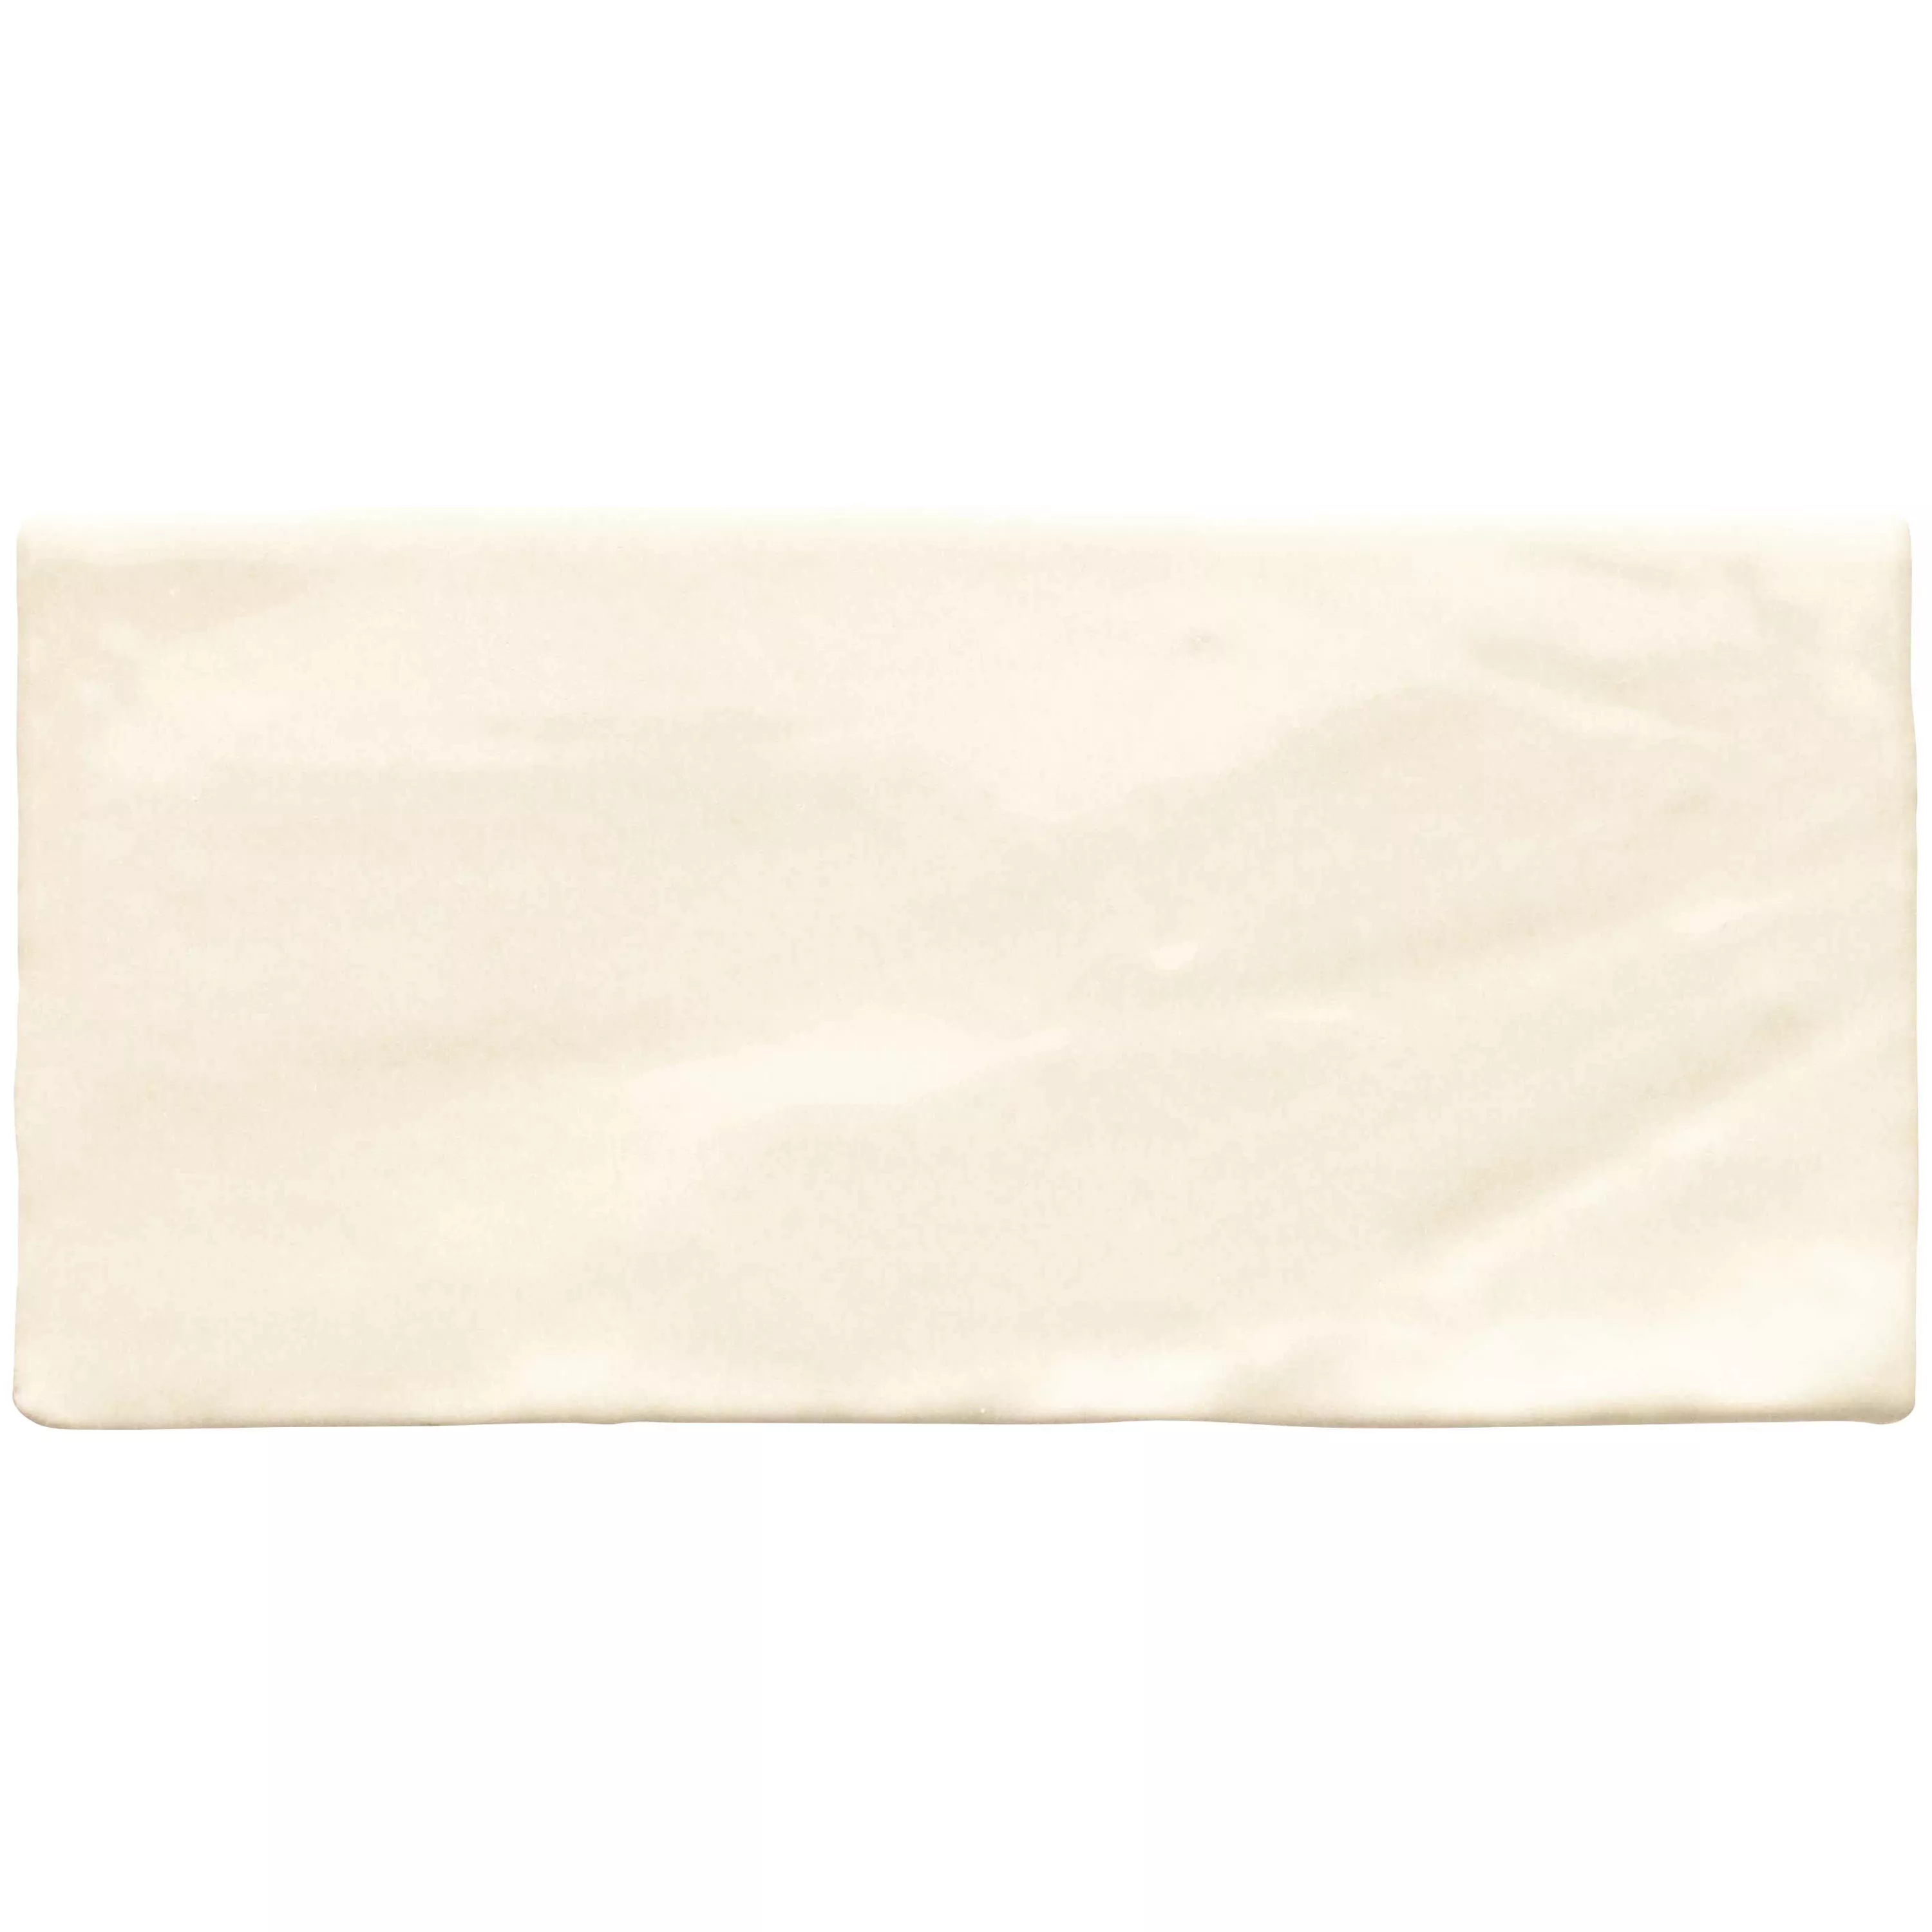 Πλακάκι Tοίχου Algier Xειροποίητο 7,5x15cm Cream